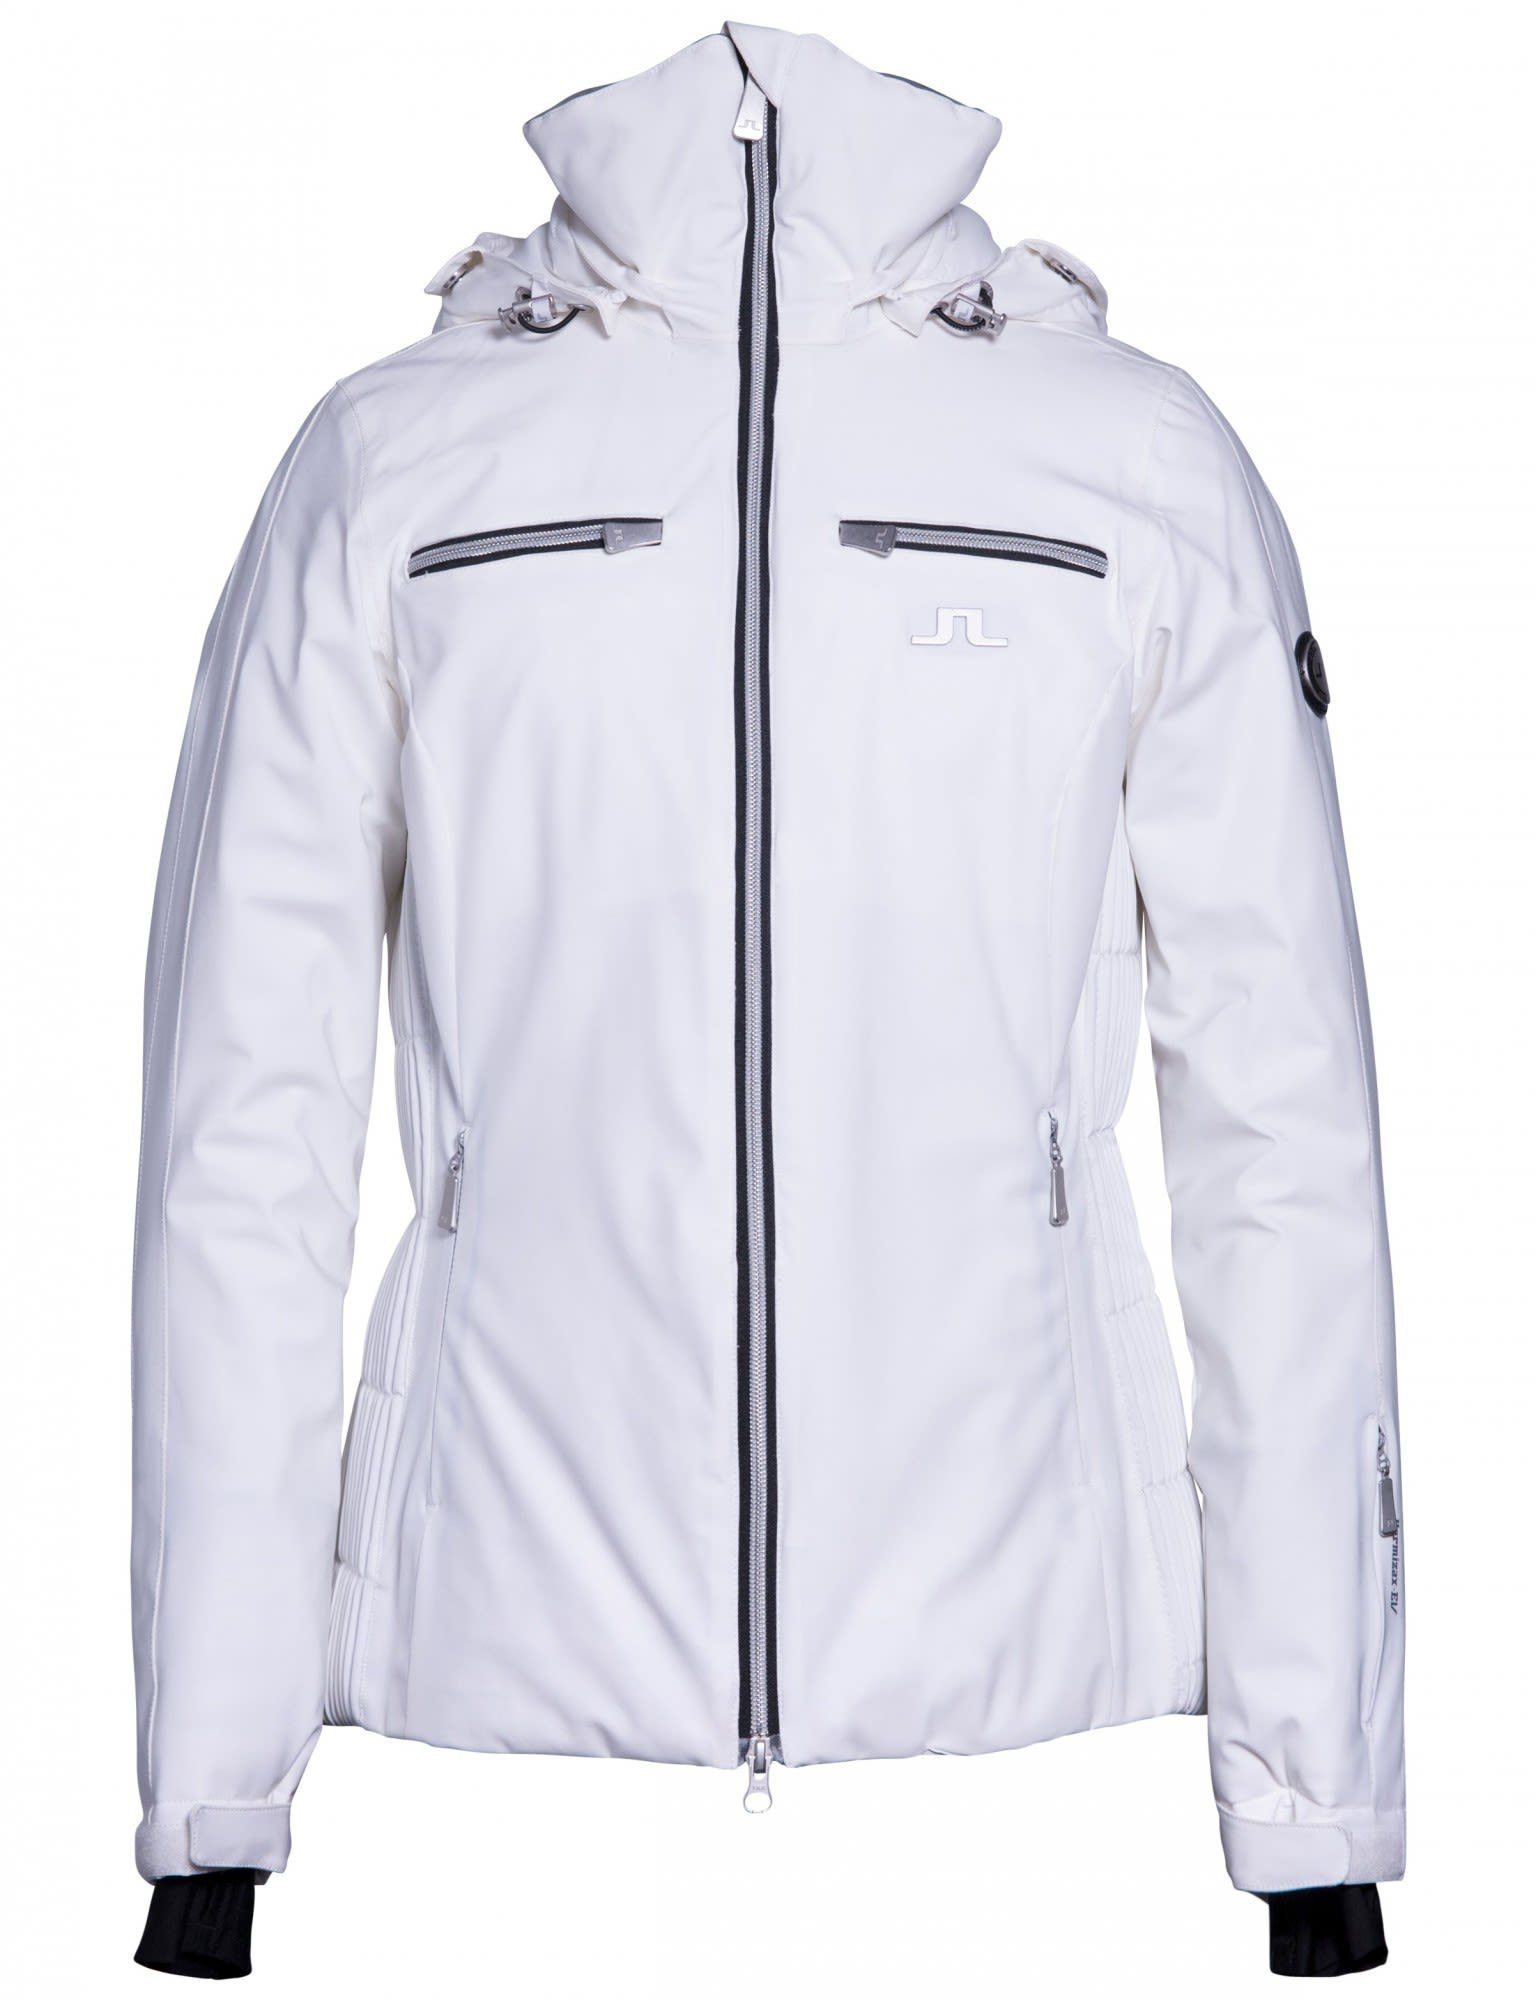 W (vorgängermodell) Skijacke Jacket Moffit J.LINDEBERG J.lindeberg